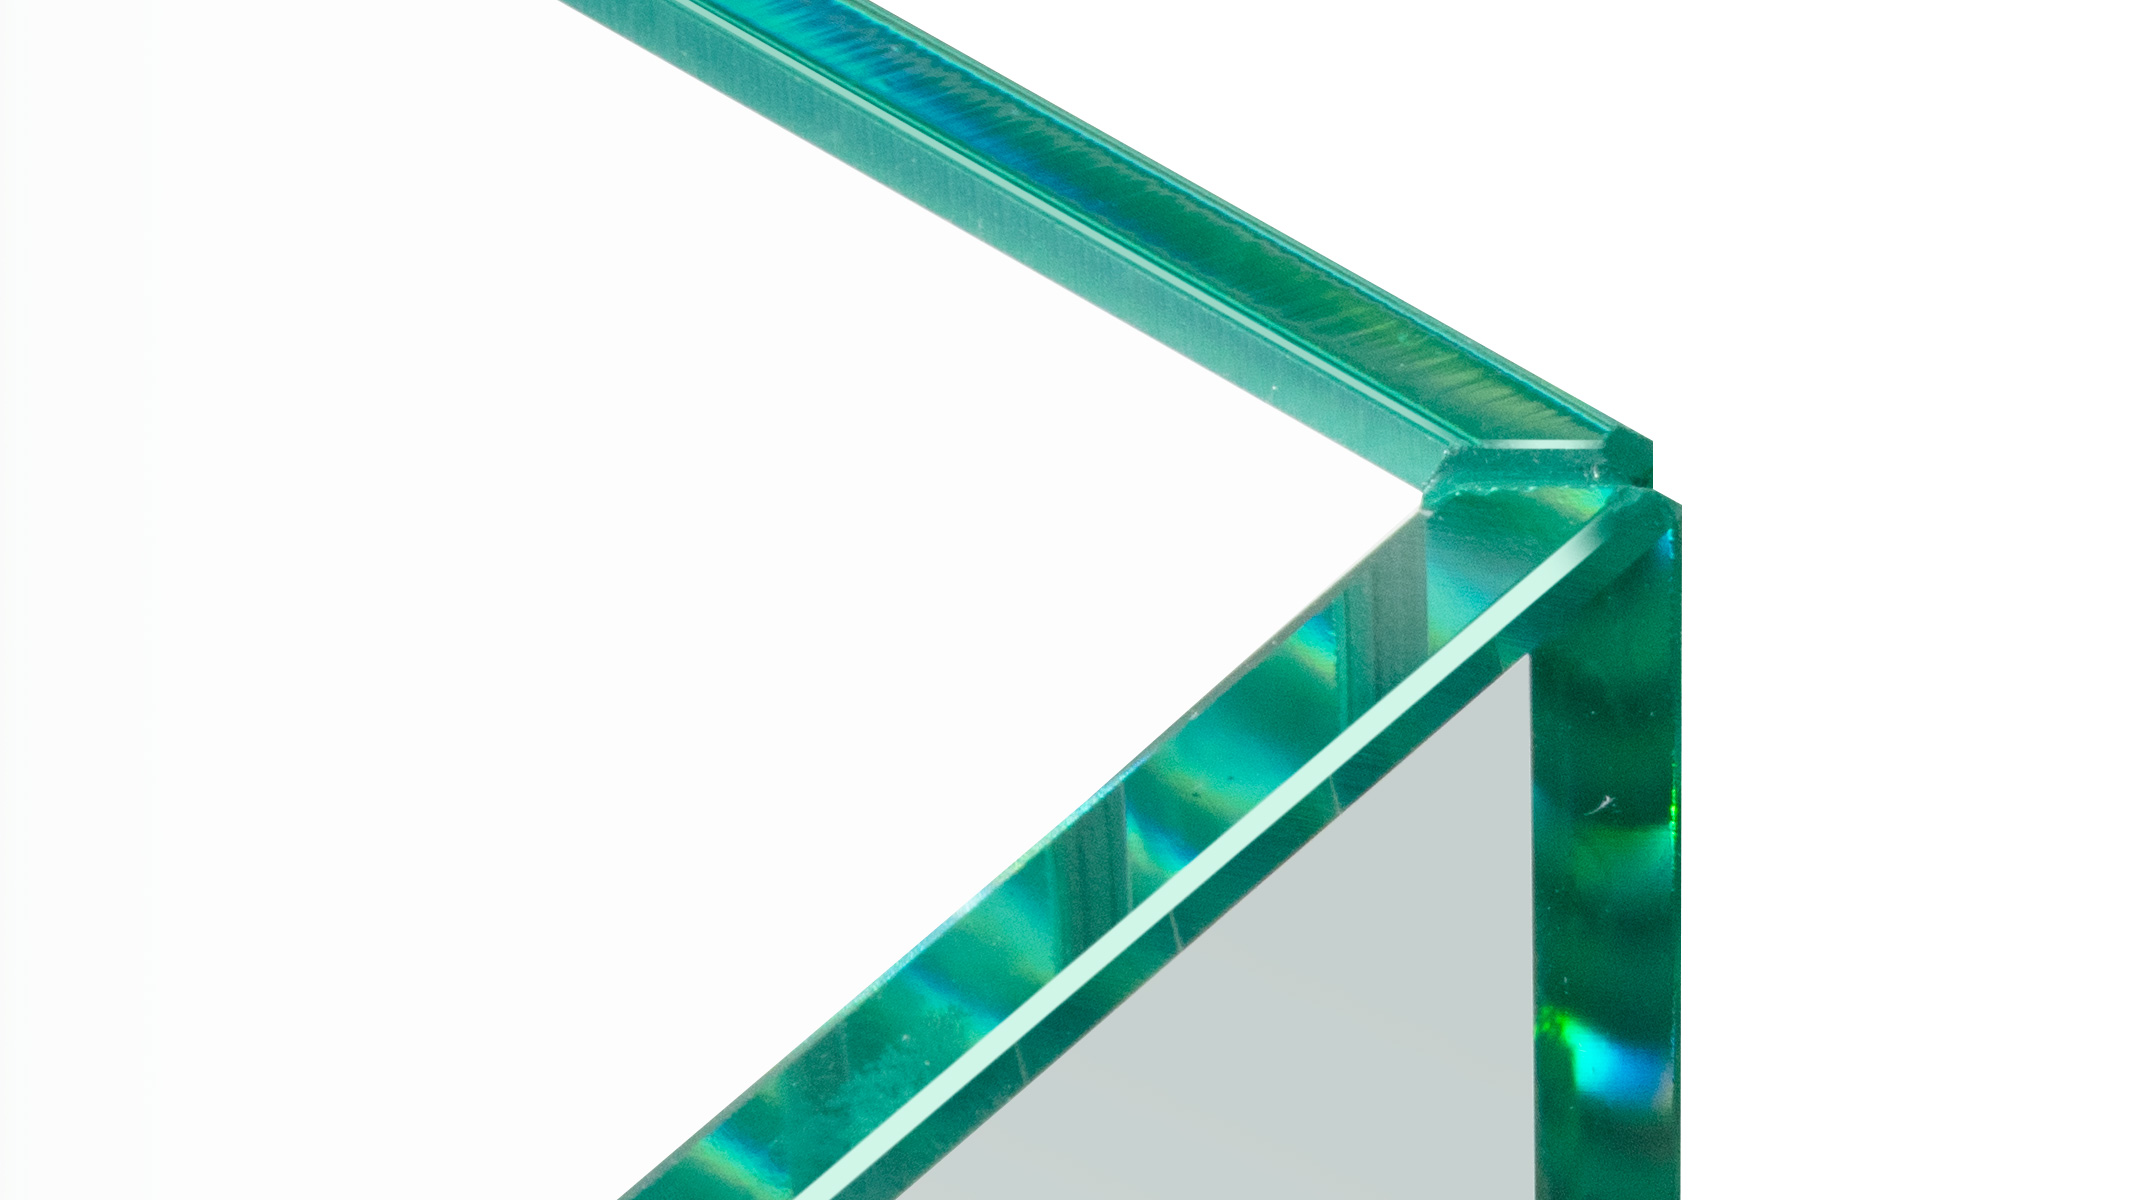 ESG Floatglas in U-Form, Höhe 30 cm, Stärke 6 mm, Kanten auf Gehrung UV verklebt, Kanten poliert,
Sonderausstattung für Ergolift Evolution 120 cm